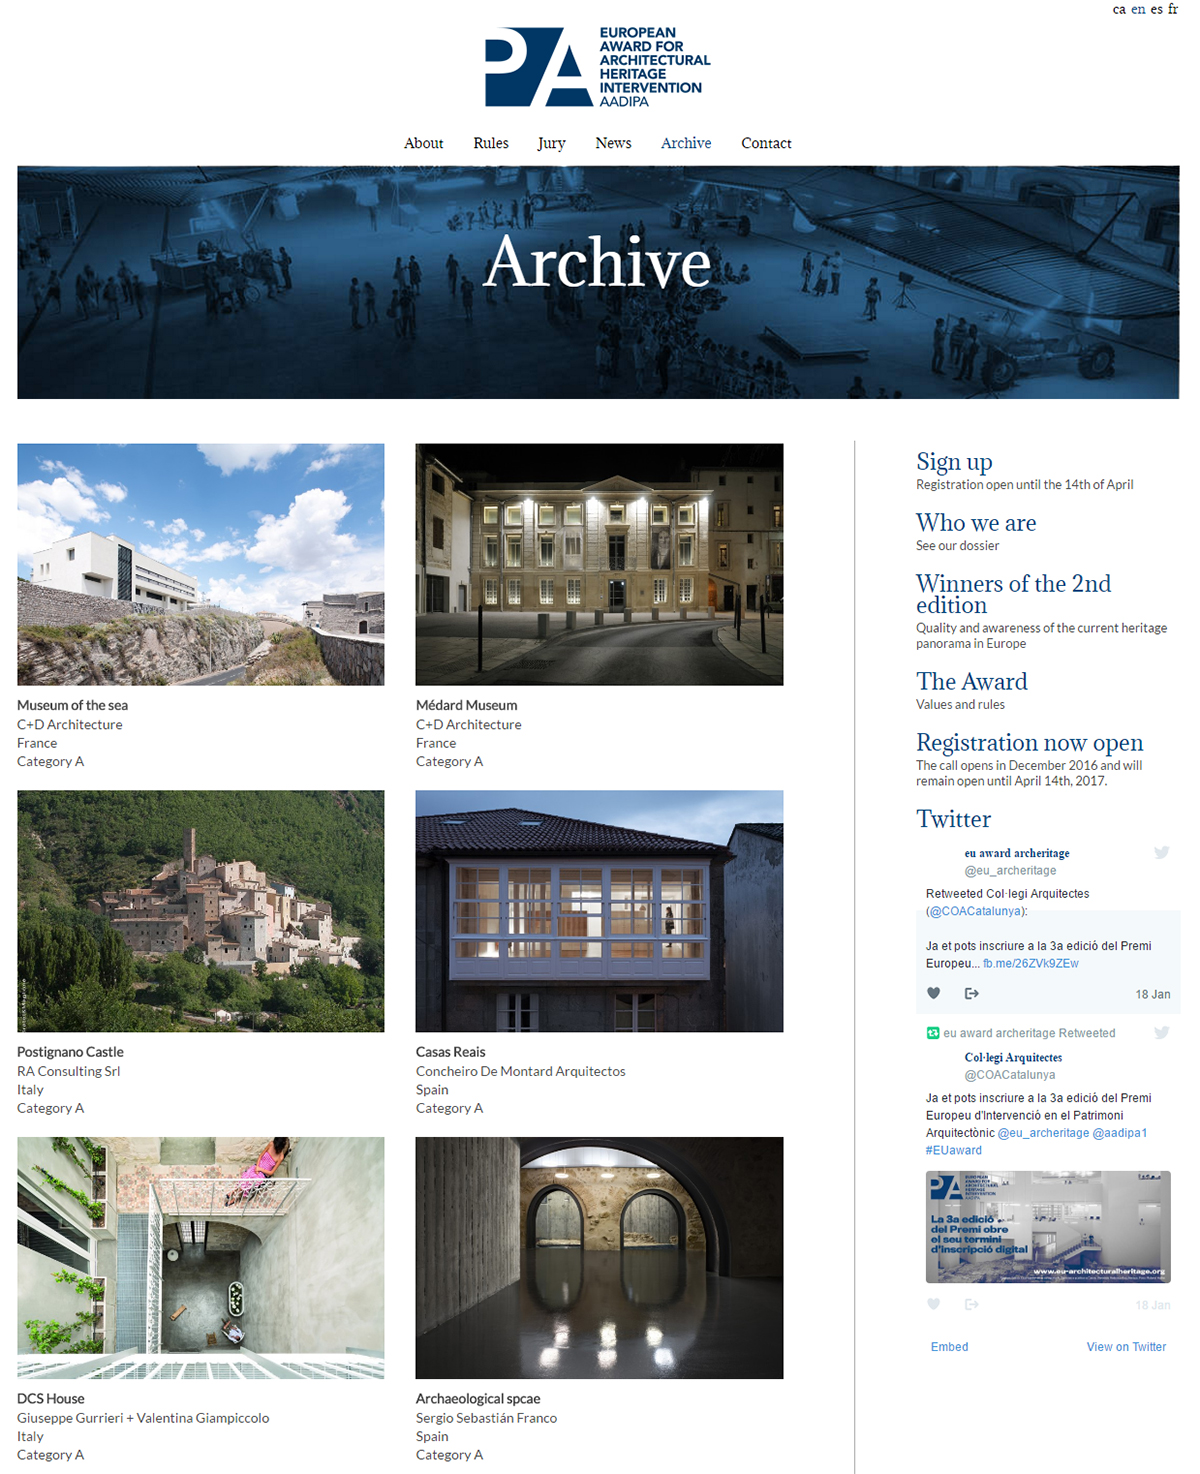 Un archivo sobre la intervención en el patrimonio arquitectónico europeo